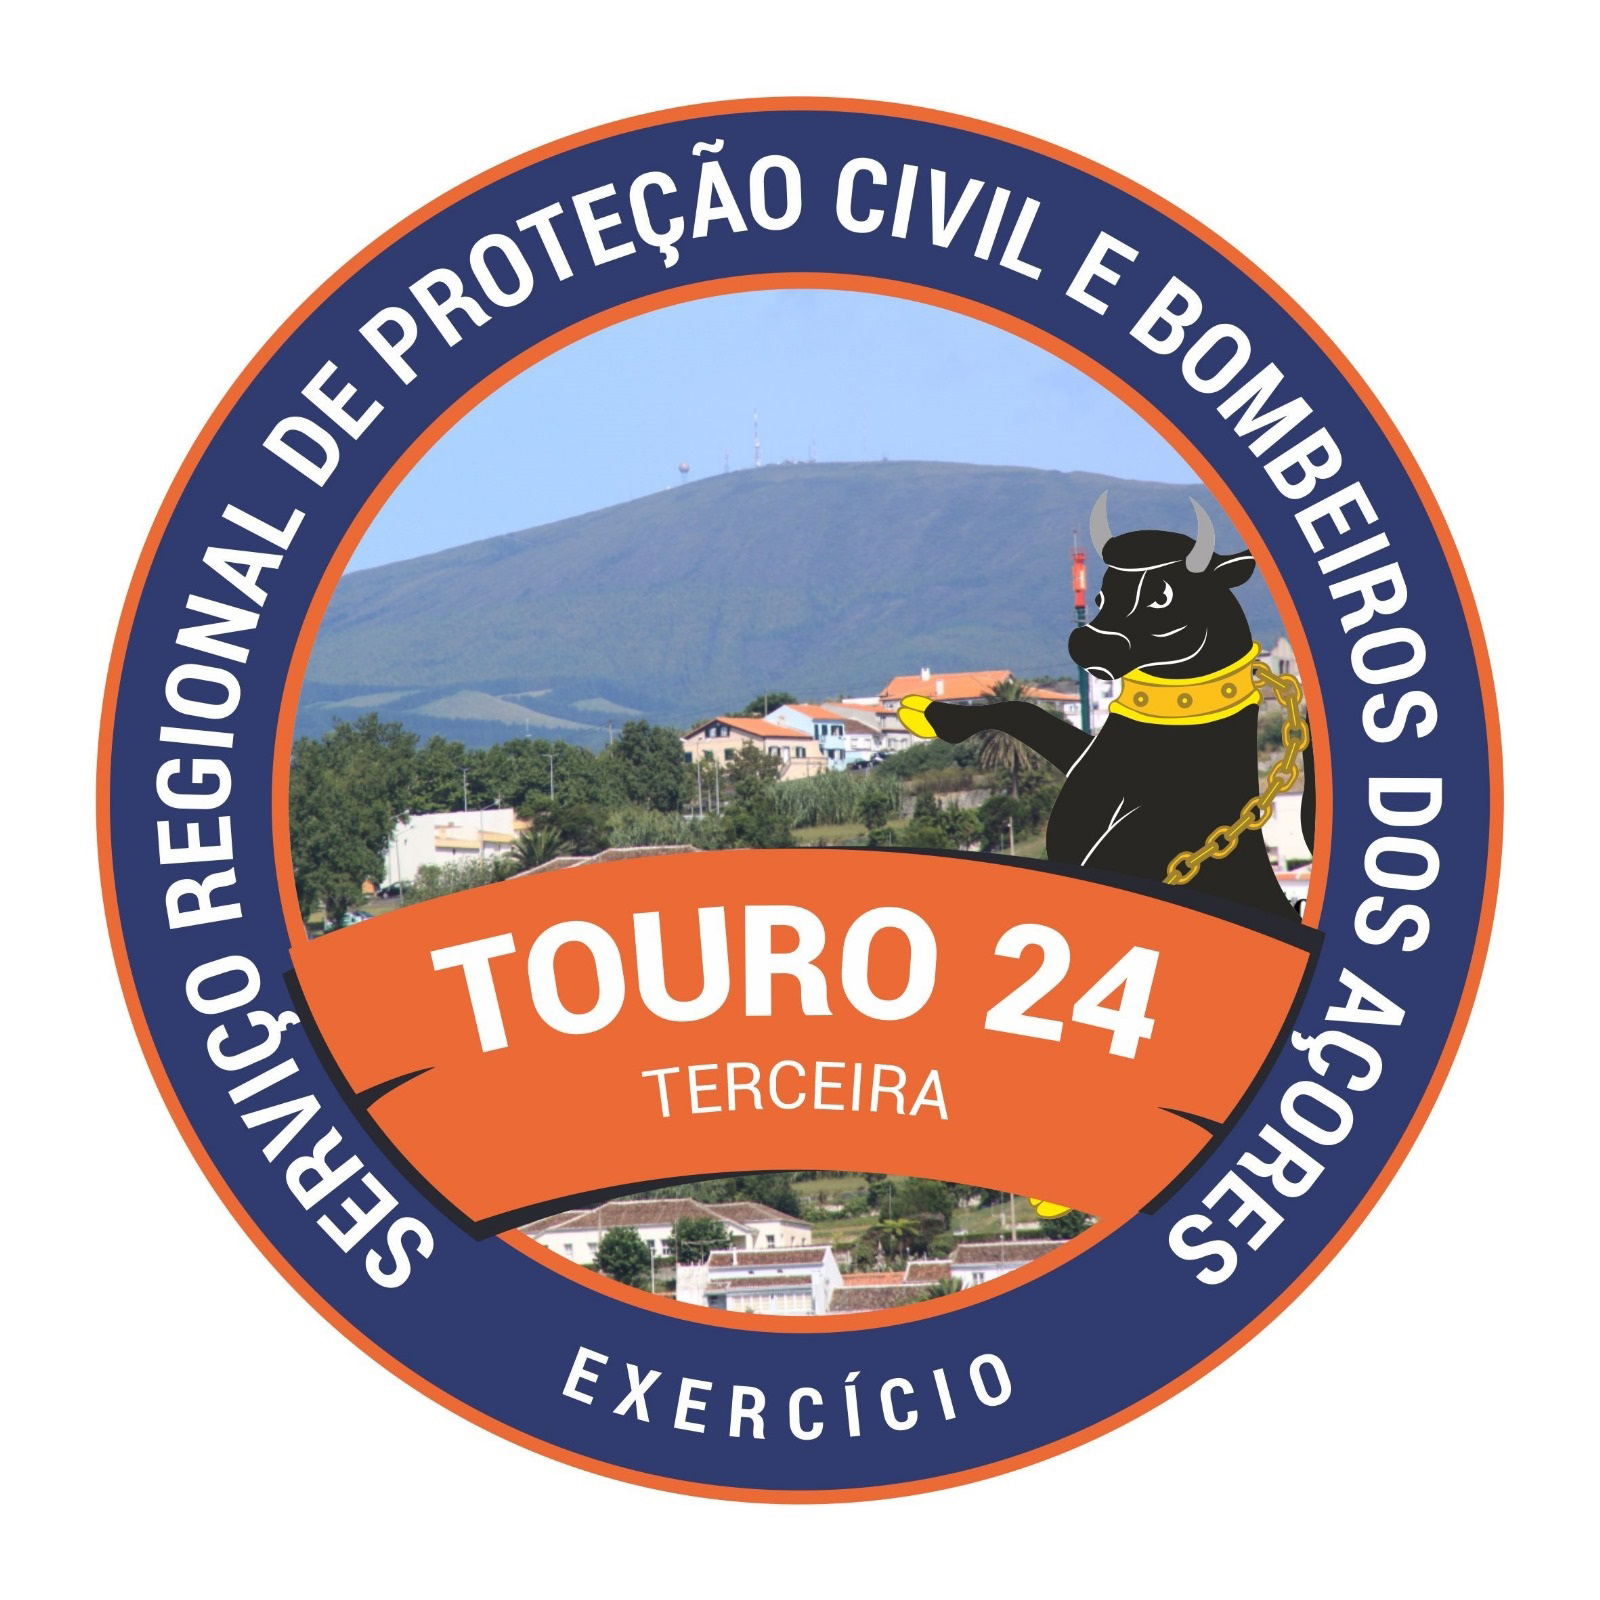 Proteção Civil dos Açores realiza exercício TOURO24 na Terceira para testar resposta a cenário sismovulcânico